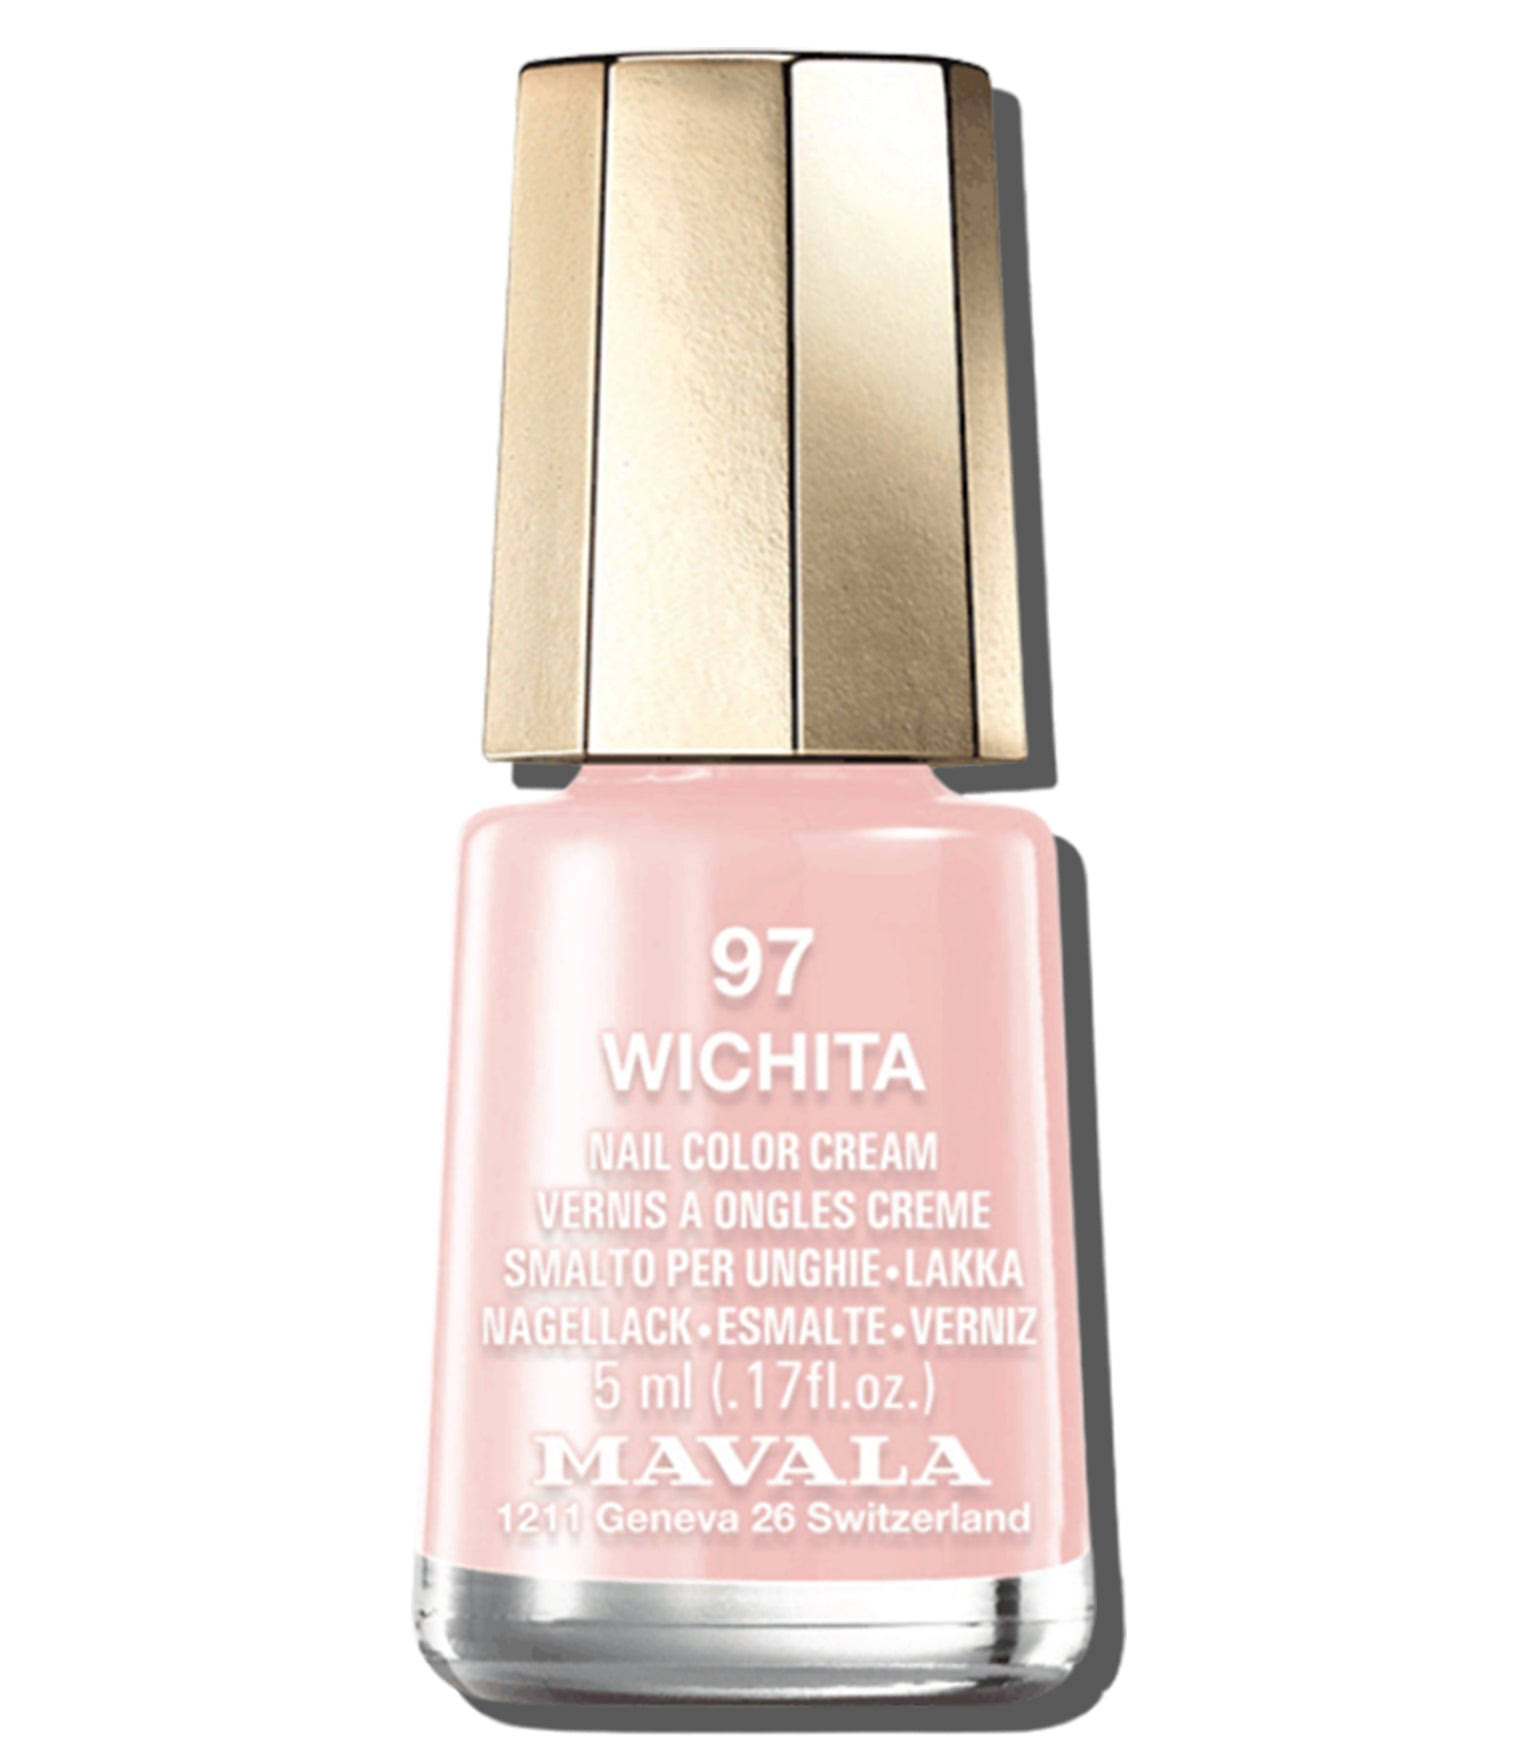 Mavala Nail Color Cream - 97 Wichita